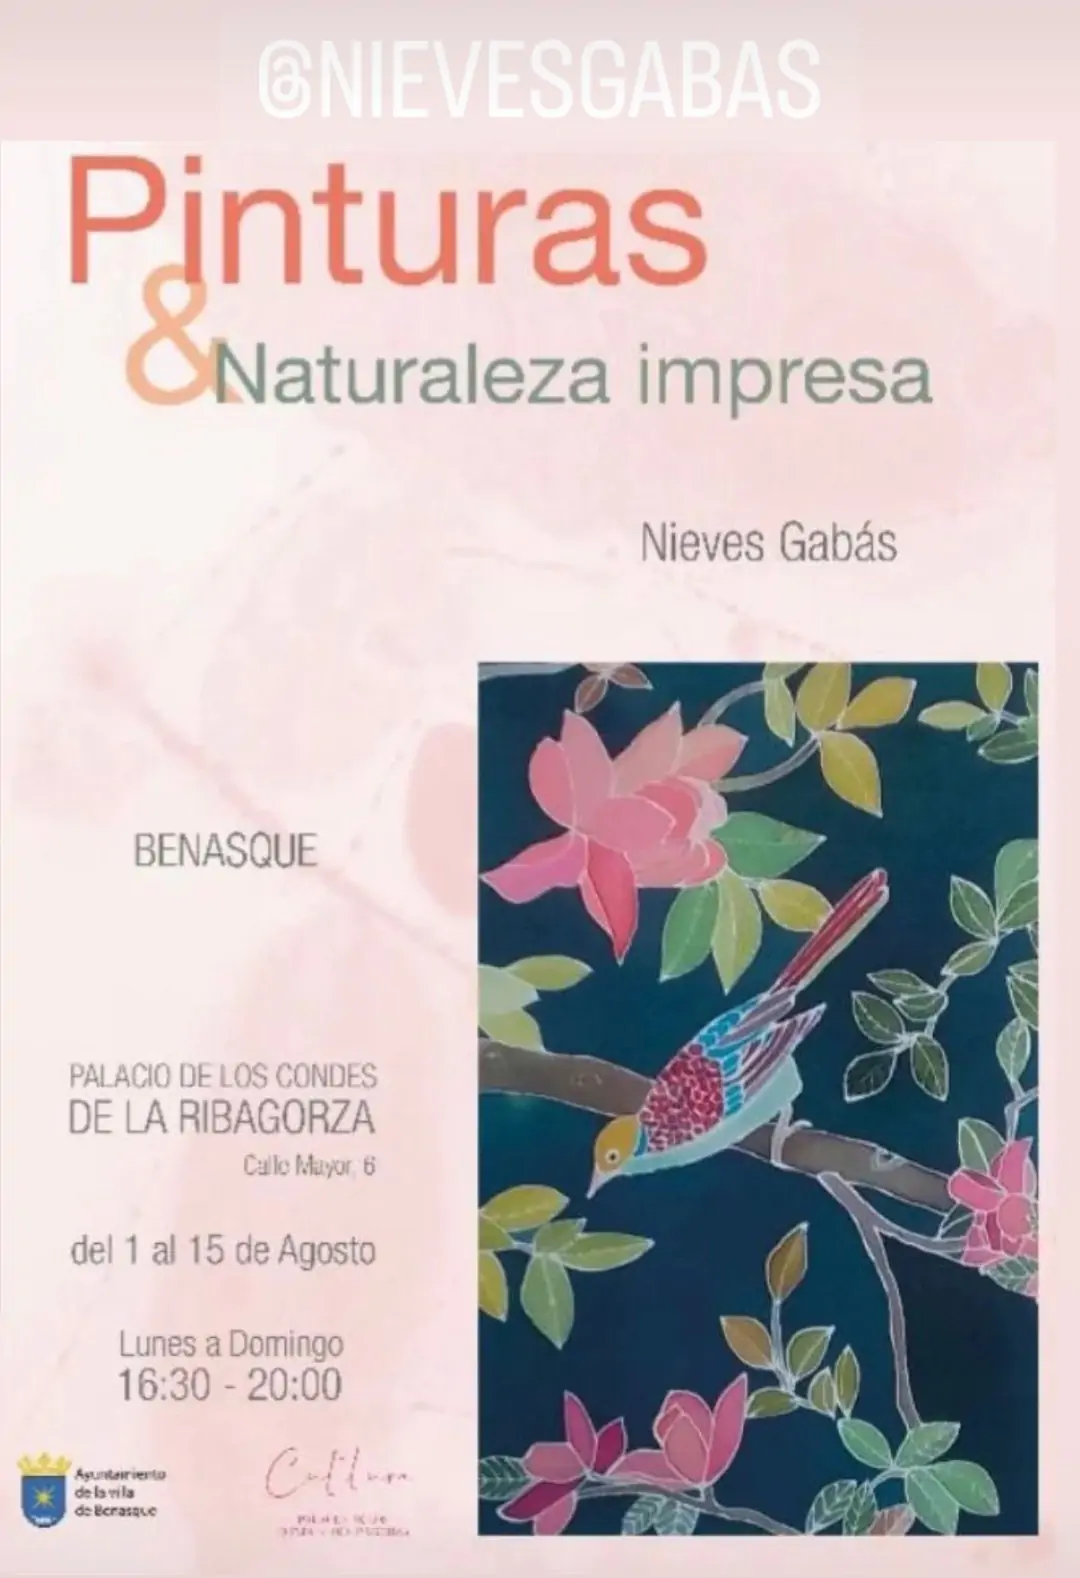 Exposición Pinturas & naturaleza impresa | enBenas.com